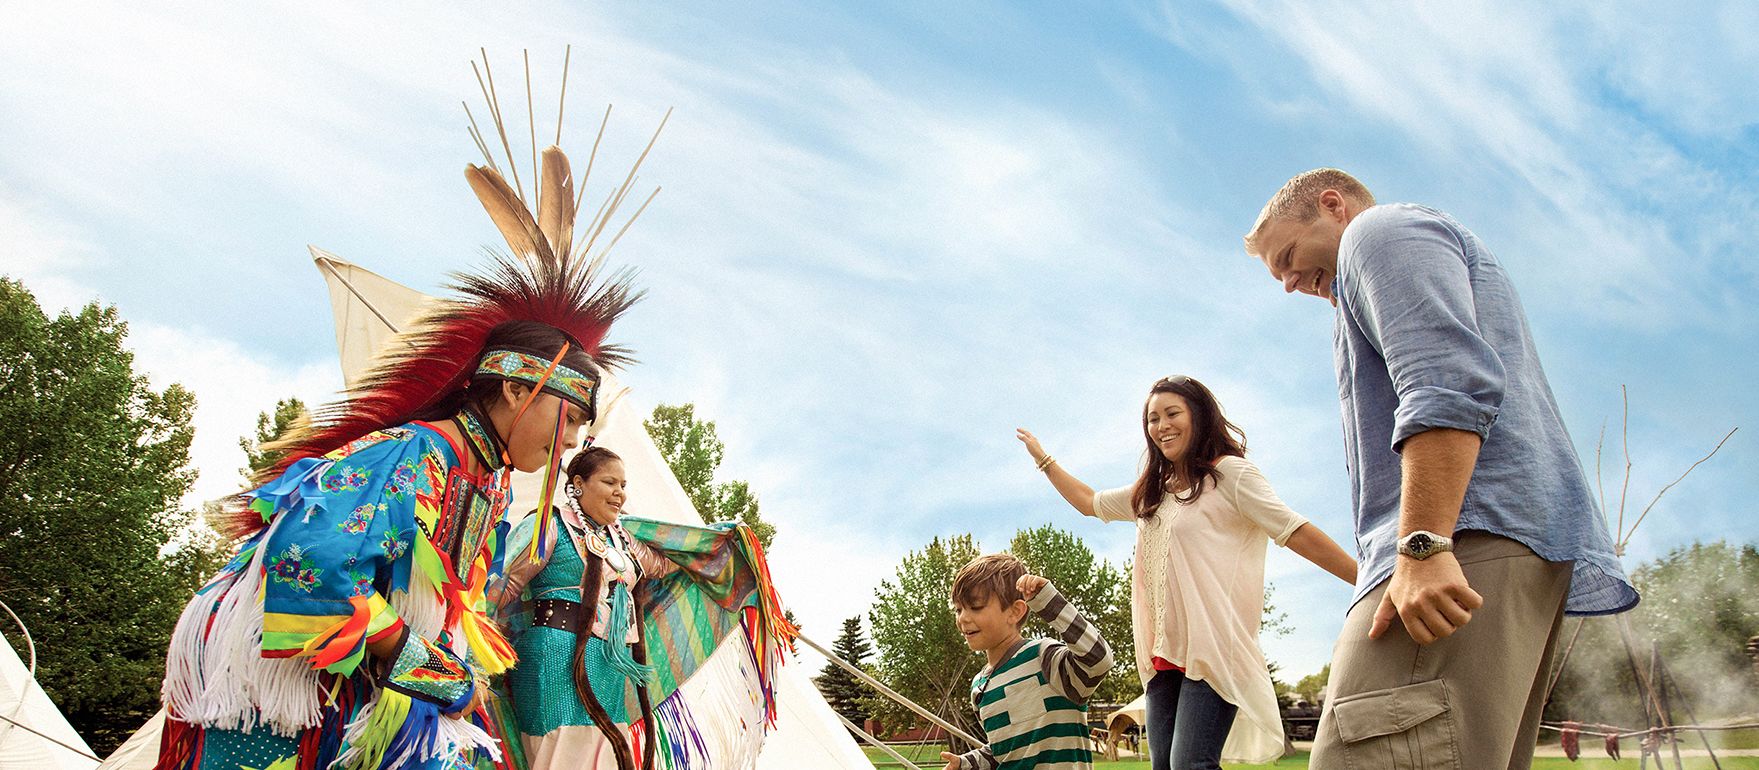 Familie Tanzt mit Eingebohrenen im Heritage Park in Calgary, Canada